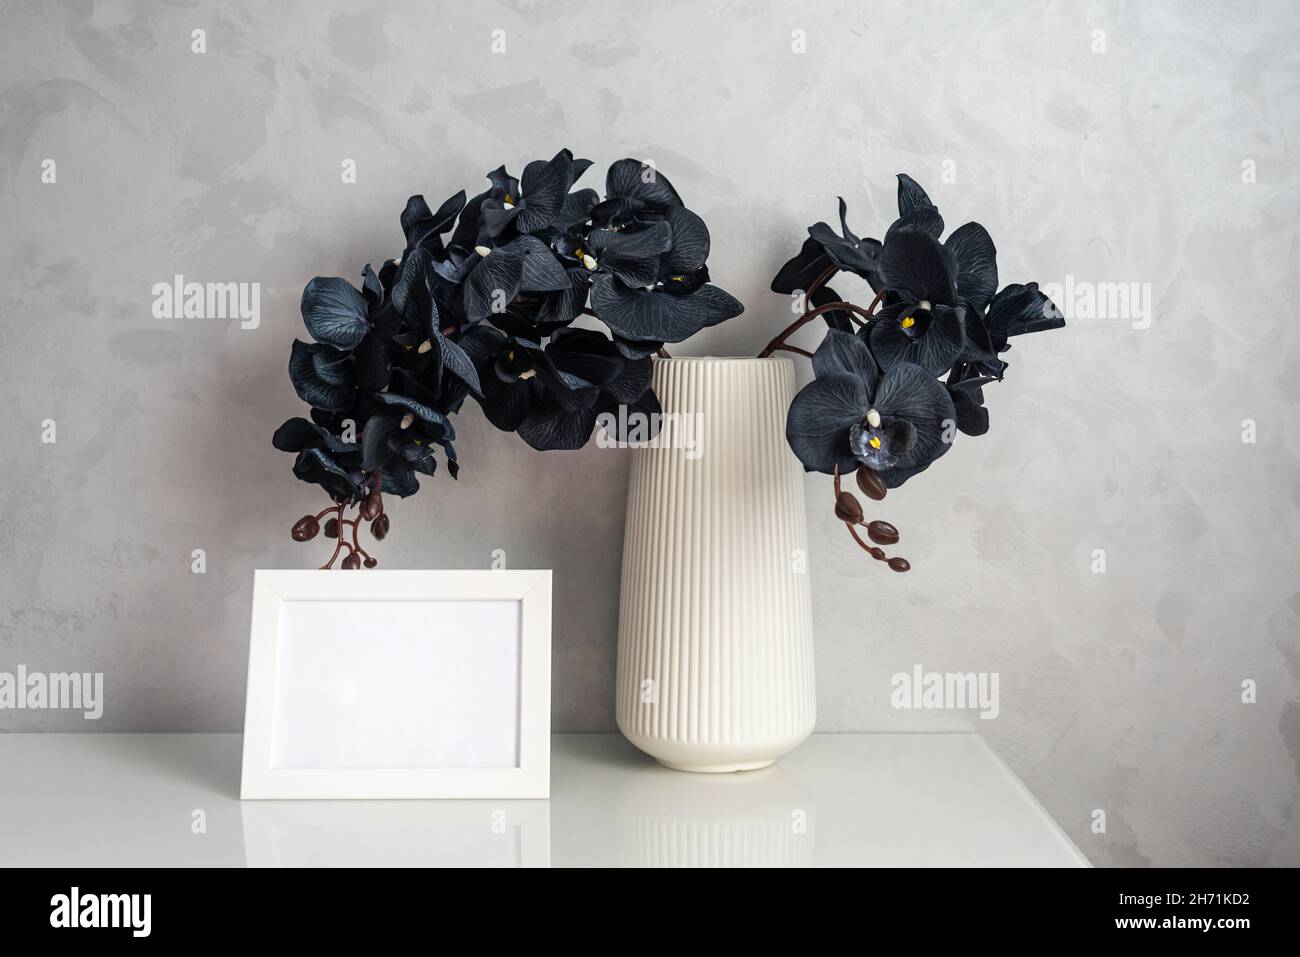 Fiori di Orchidea con petali neri e photoframe sul cabinet Foto Stock